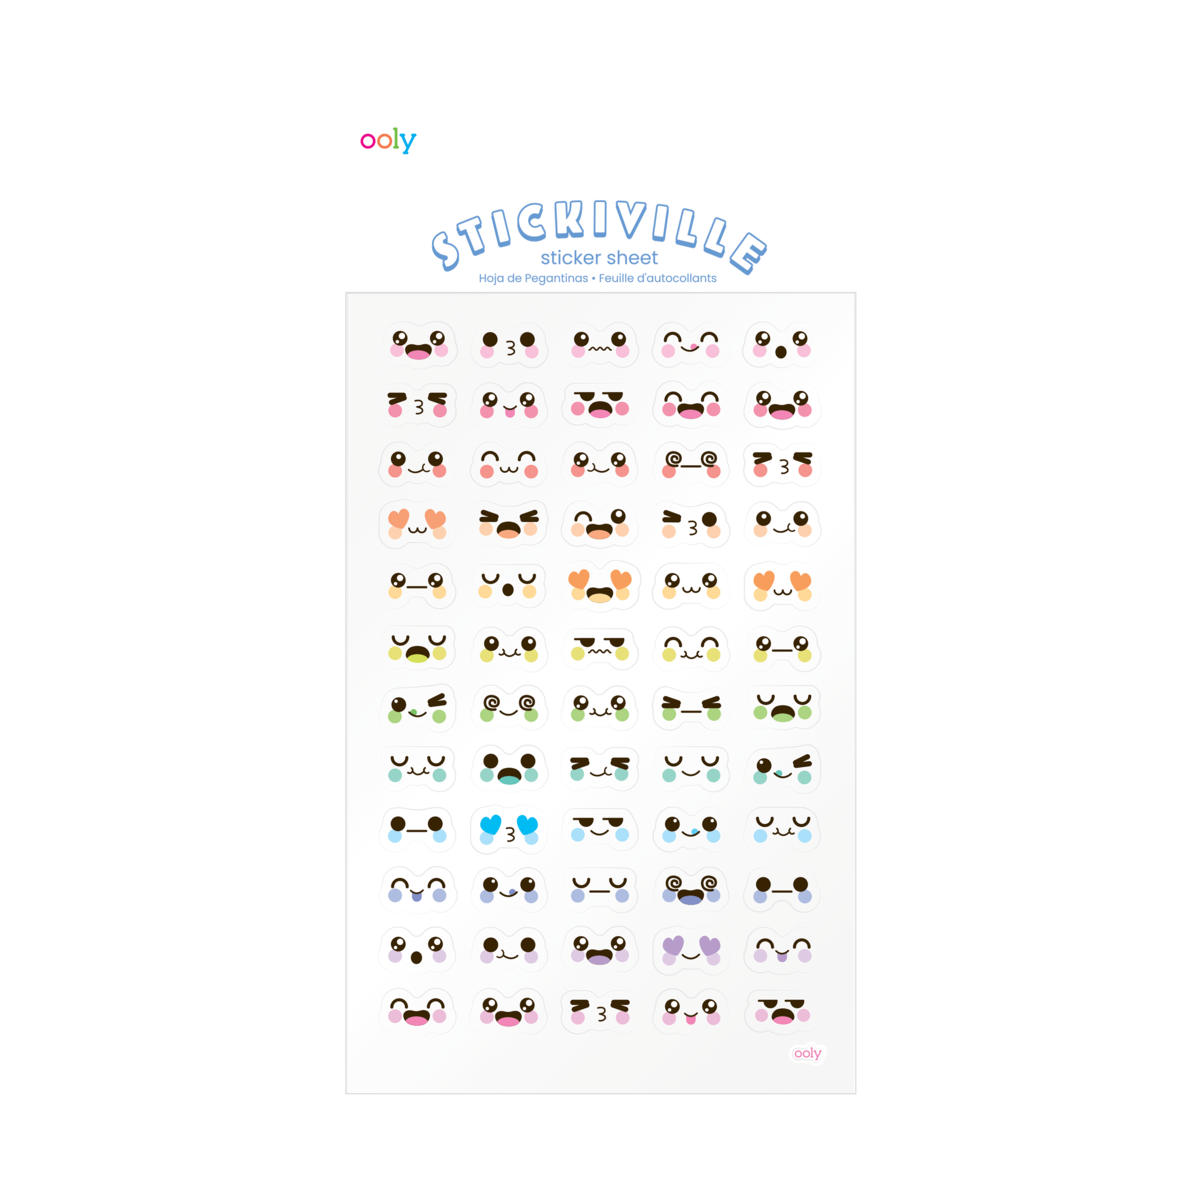 Little Kawaii Animal Sticker Set, Mouse Stickers, Kawaii Journal Stickers 